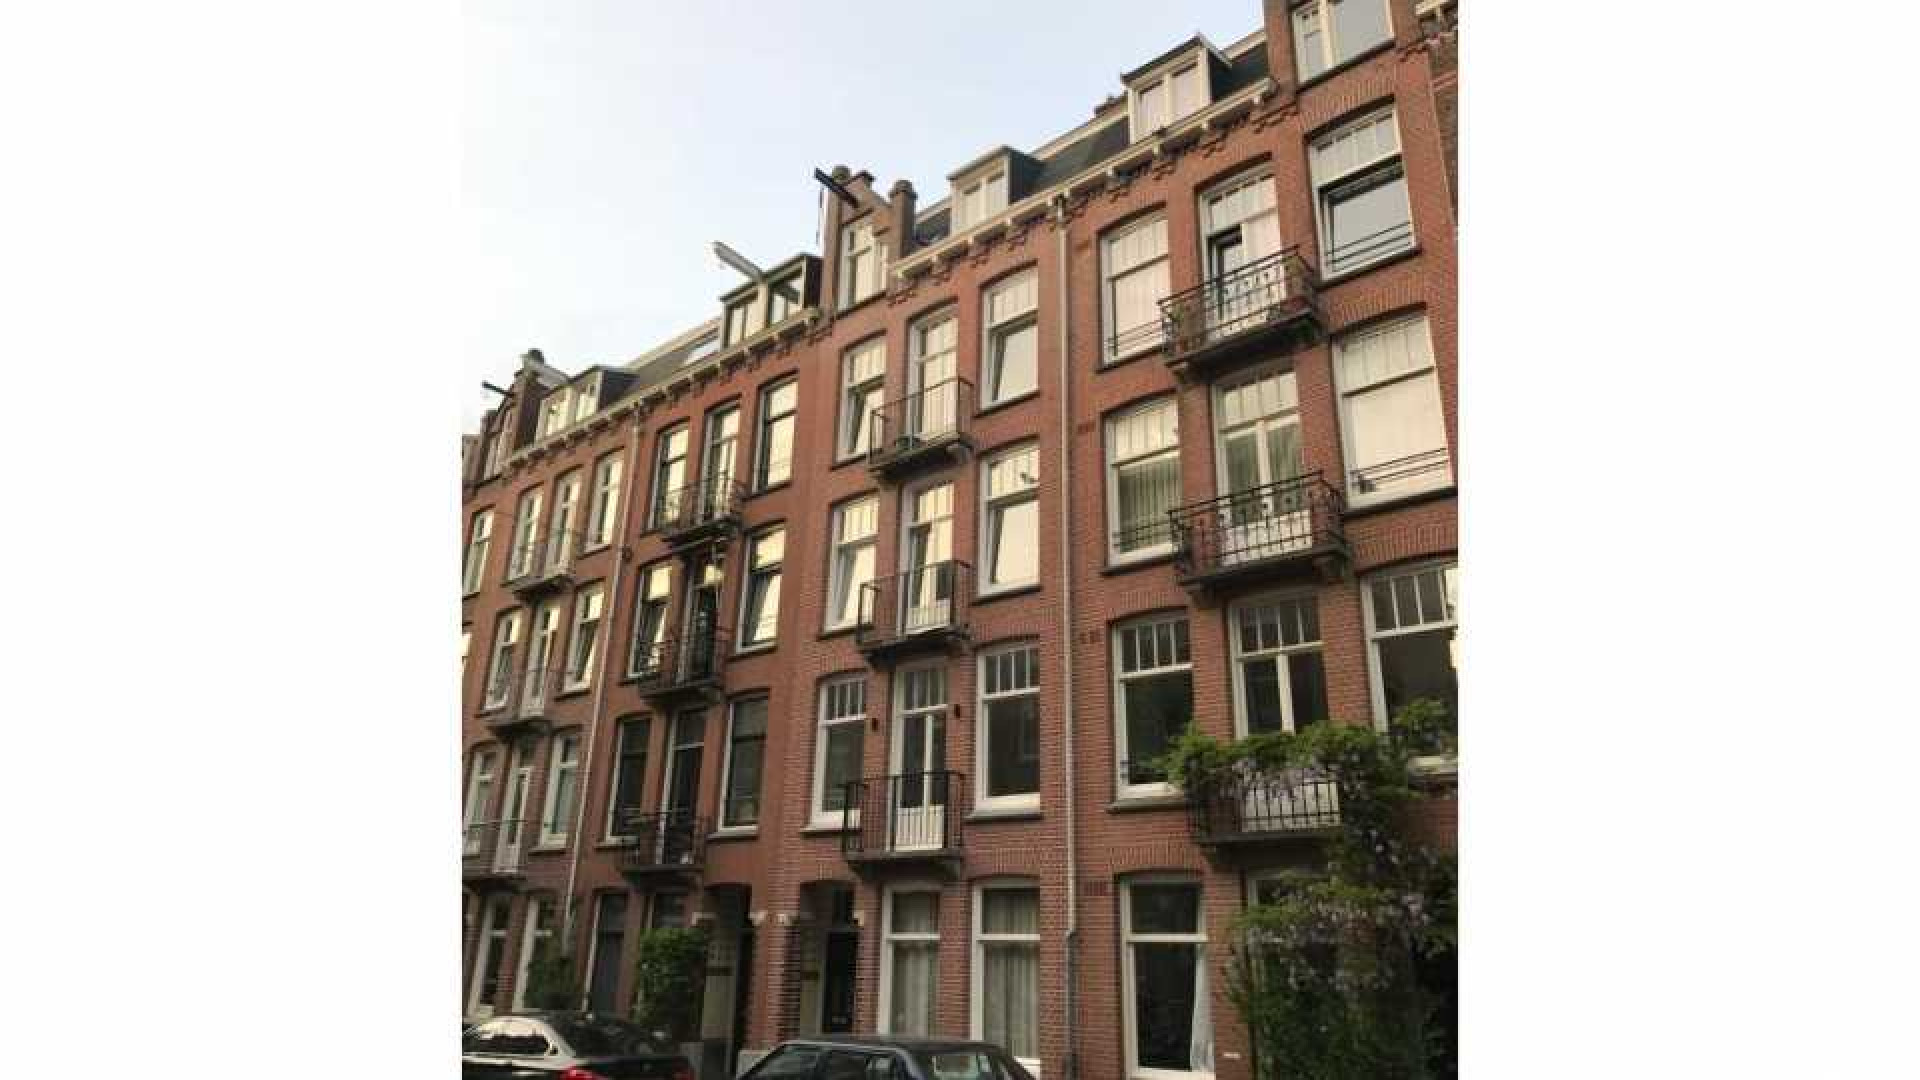 Ronald Koeman koopt voor bijna een miljoen dit dubbele bovenhuis in Amsterdam. Zie foto! 1